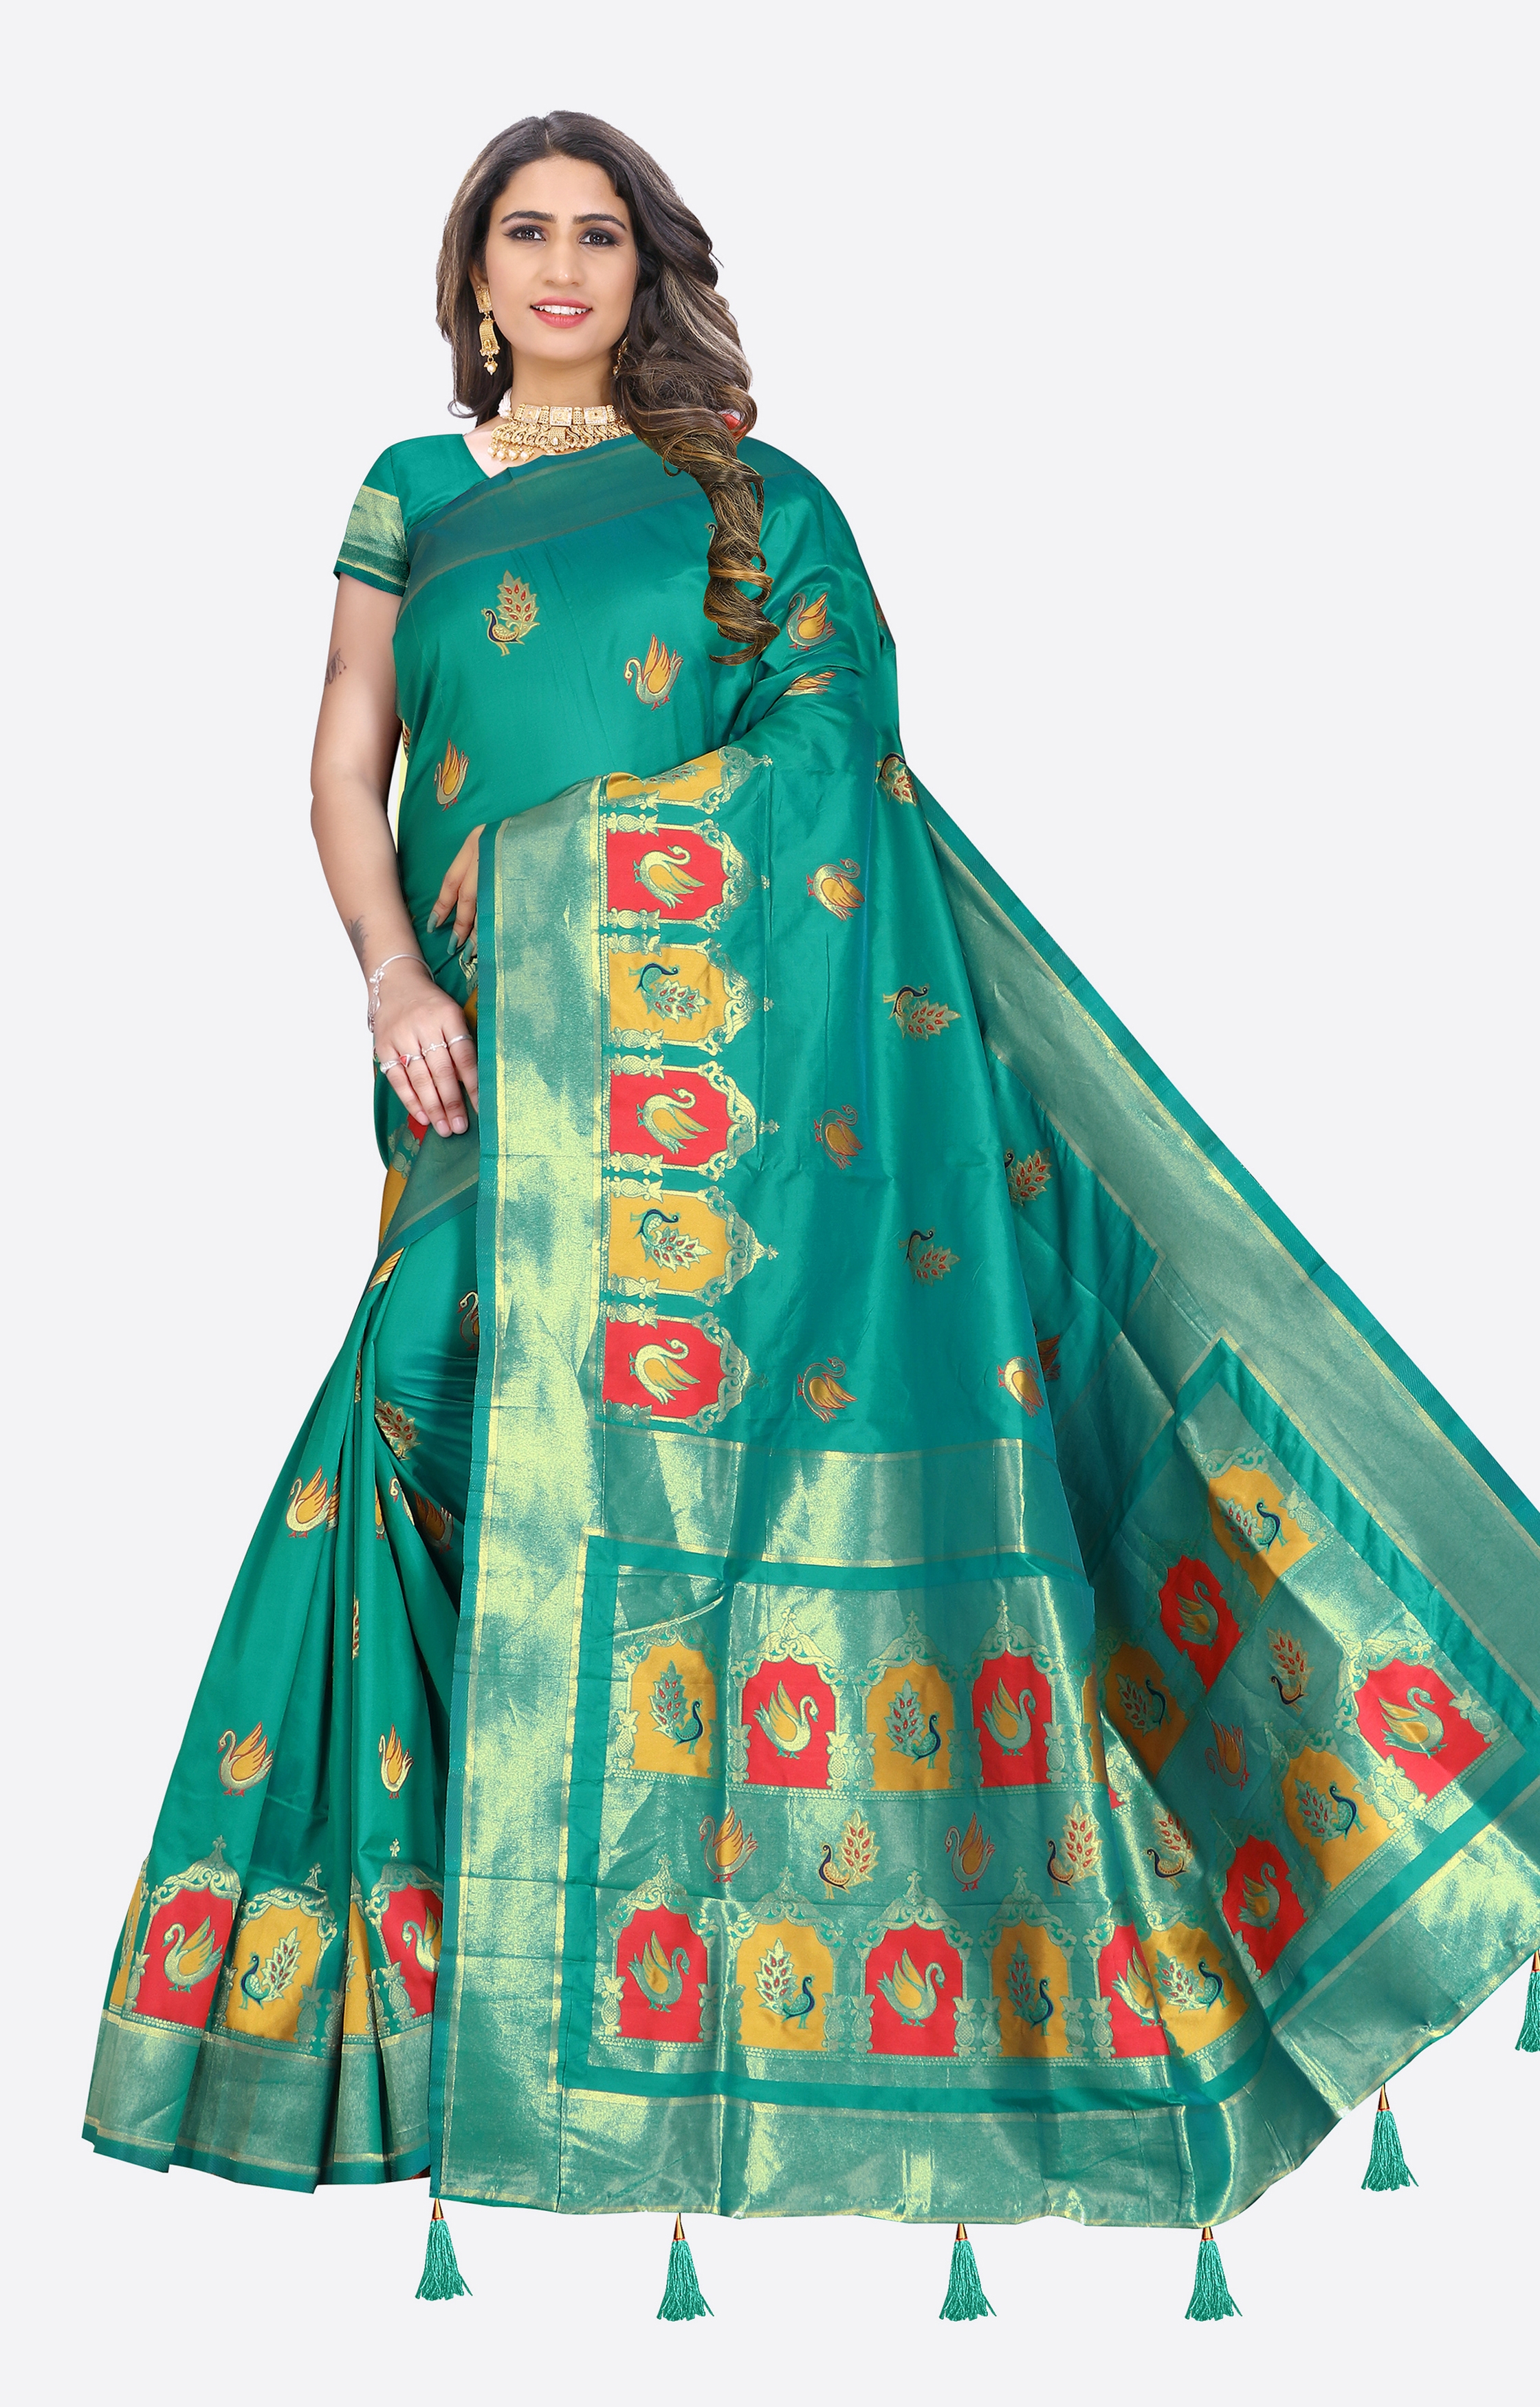 Glemora | Glemora Saree for Women Banarasi Silk Saree With Blouse (Green)